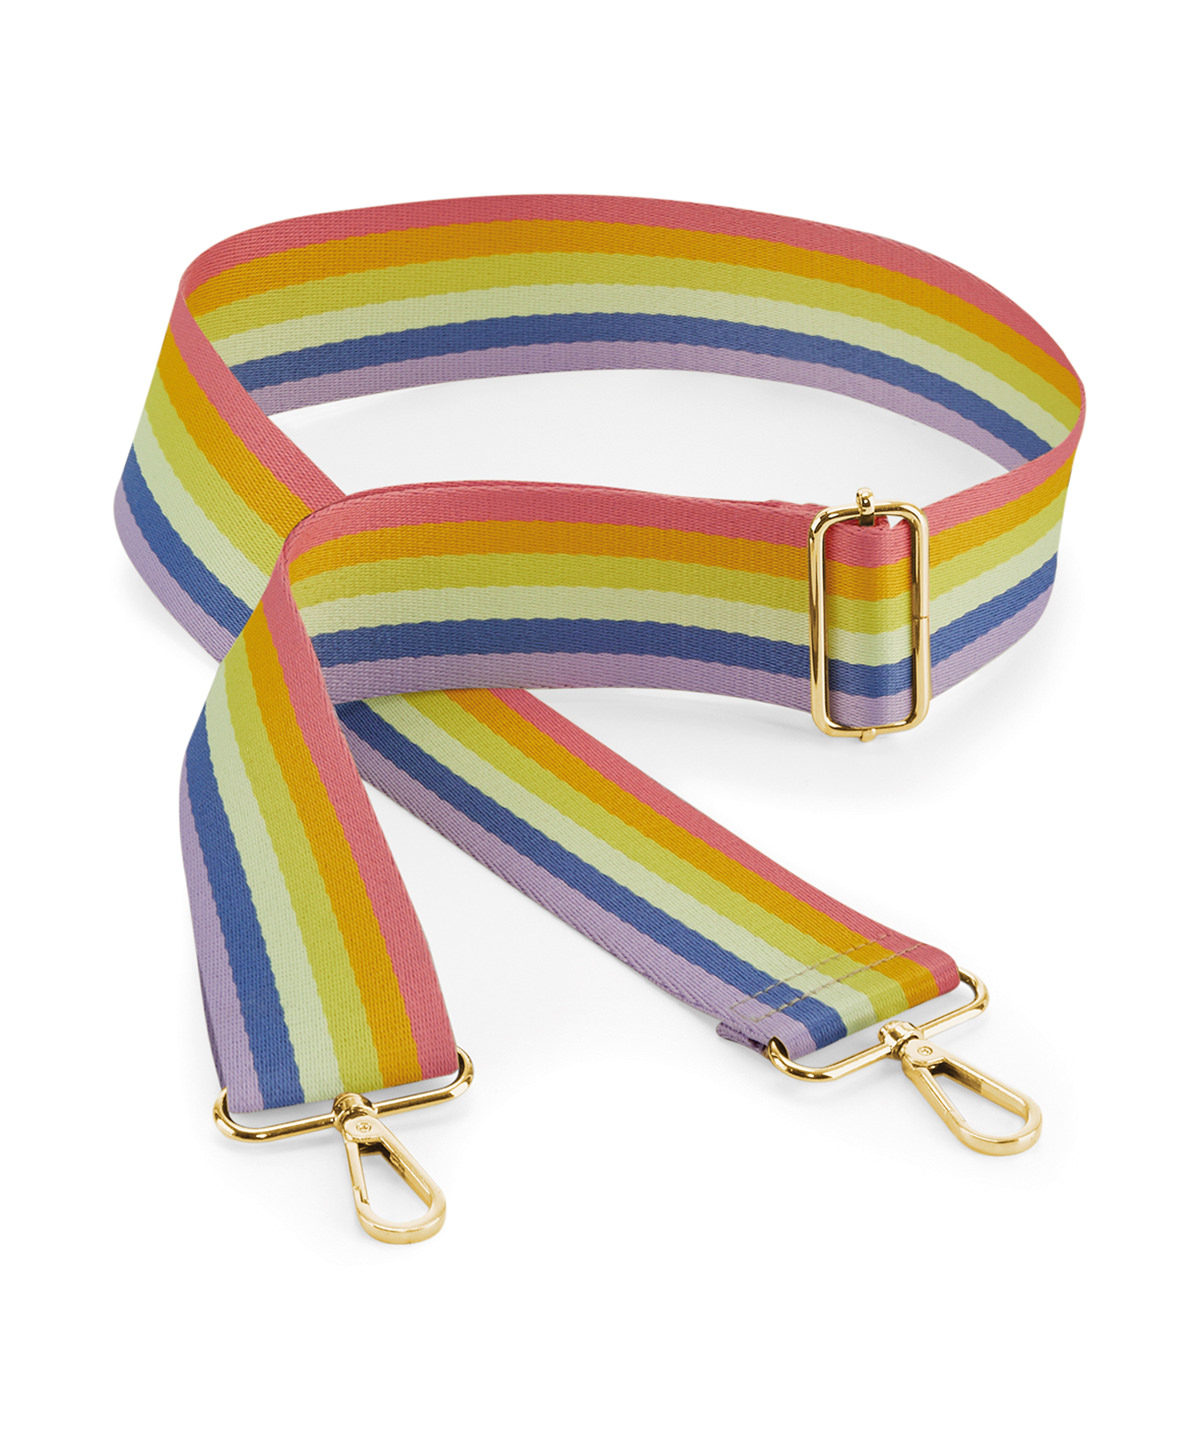 Boutique adjustable bag strap